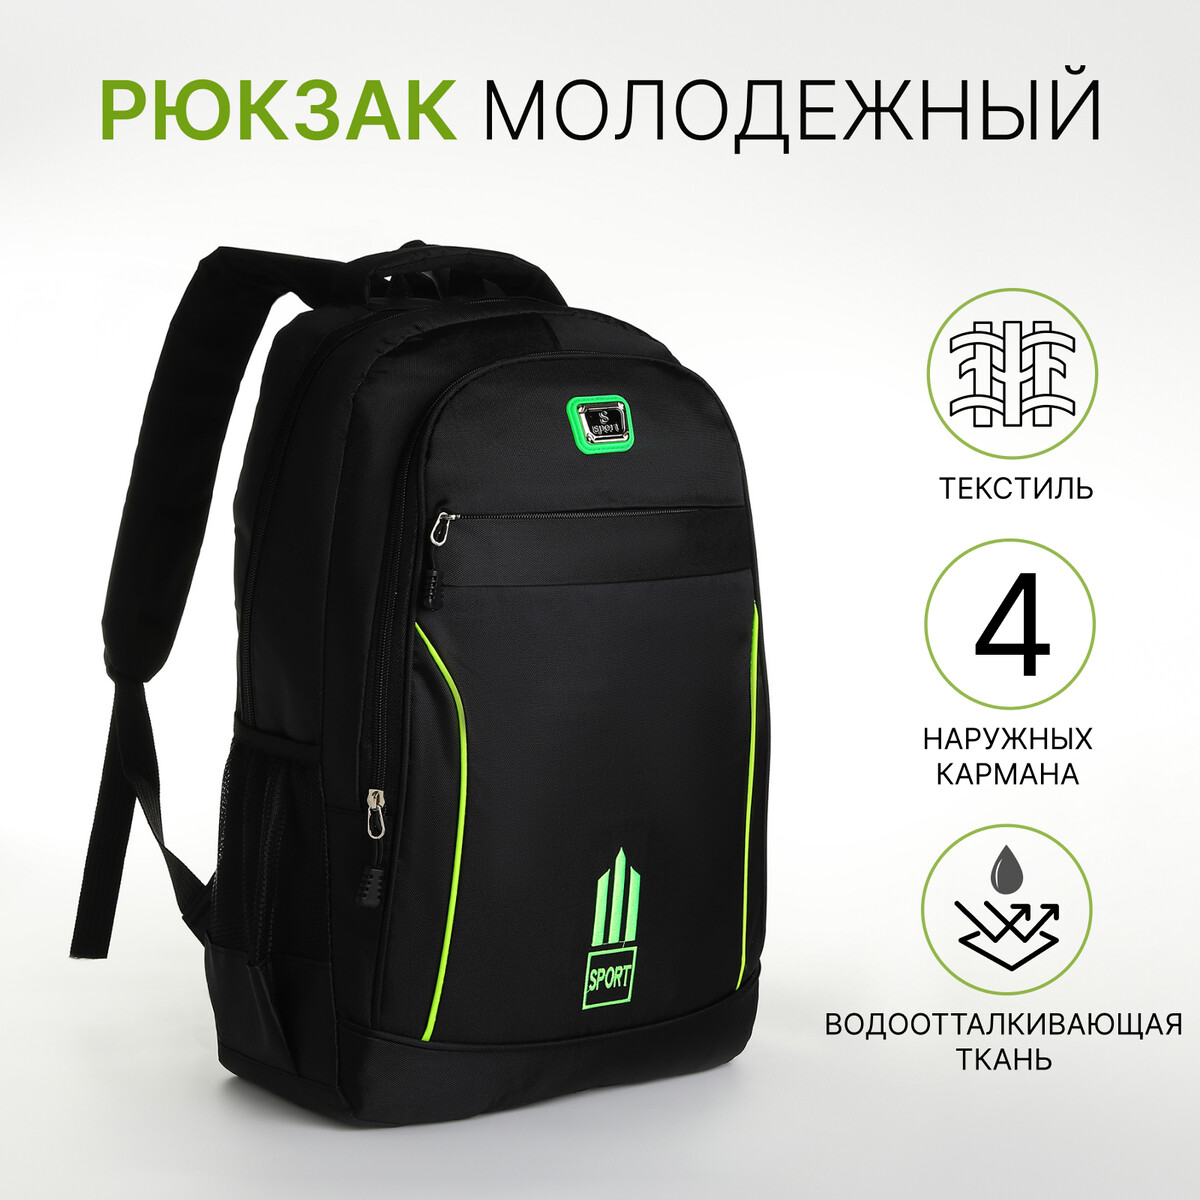 Рюкзак молодежный из текстиля на молнии, 4 кармана, цвет черный/зеленый рюкзак молодежный из текстиля на молнии 3 кармана зеленый